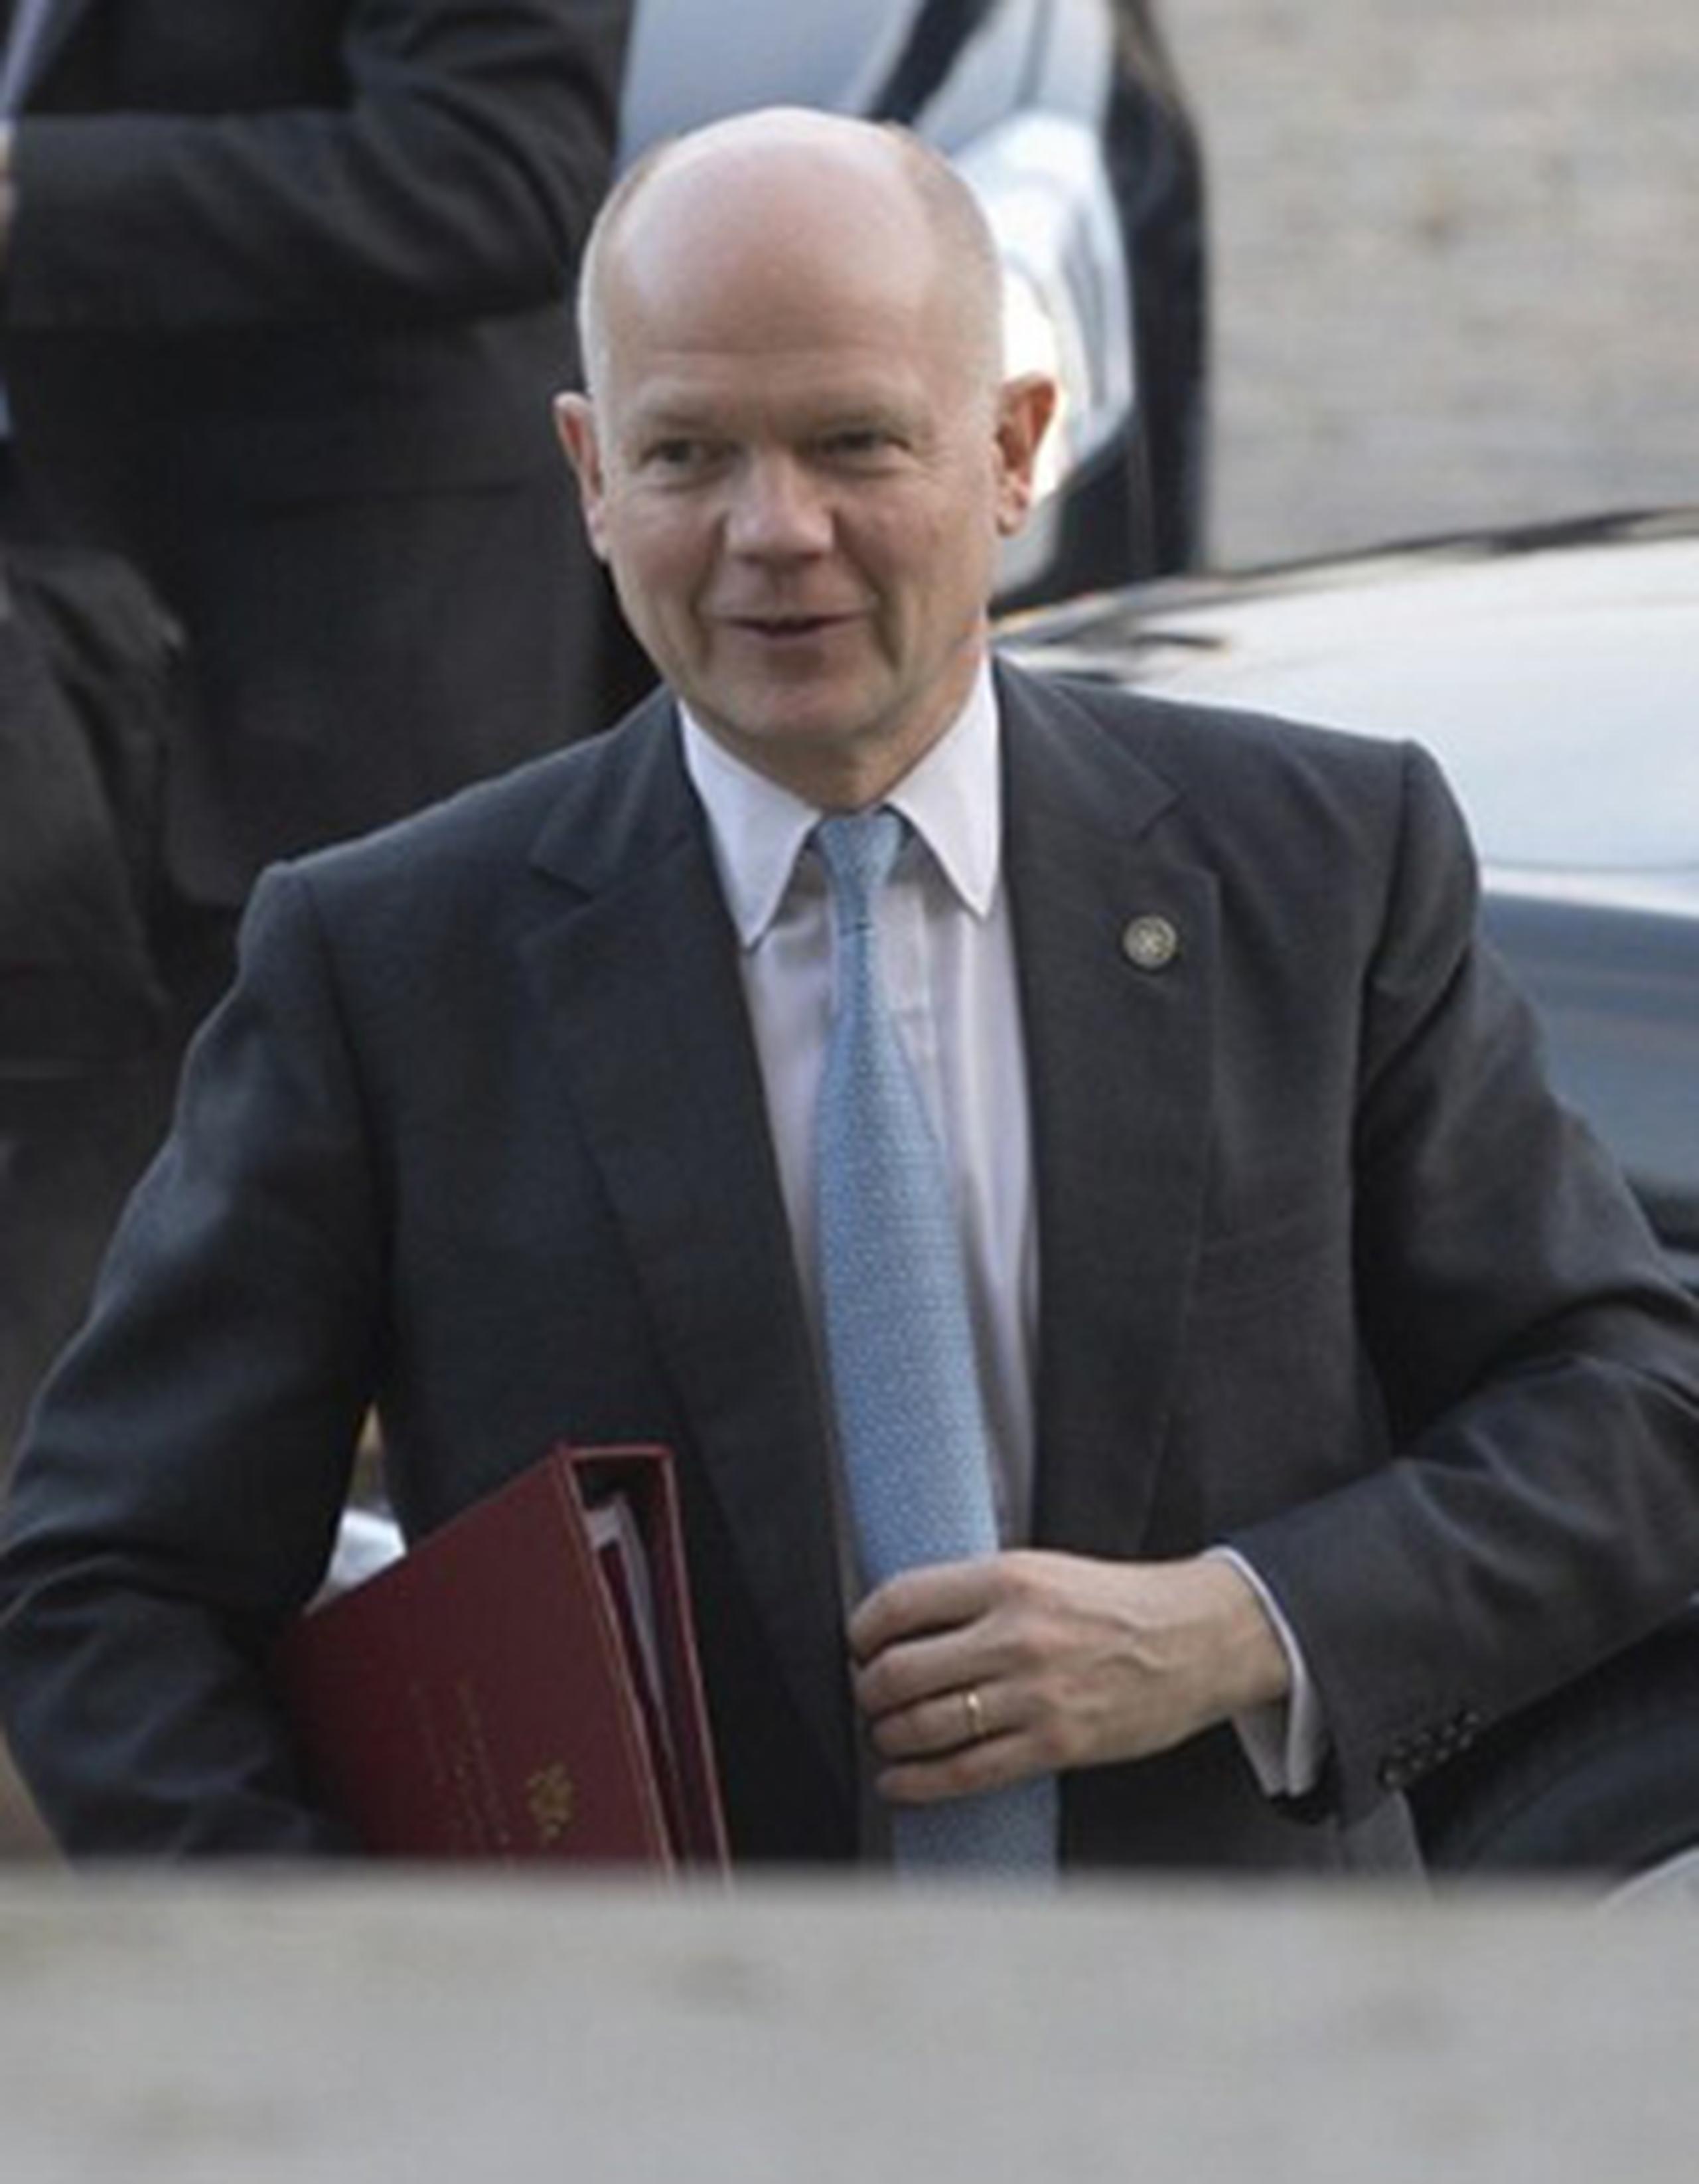 "Solo una solución política pondrá fin al conflicto", dijo William Hague, ministro británico de Exteriores. (AFP)